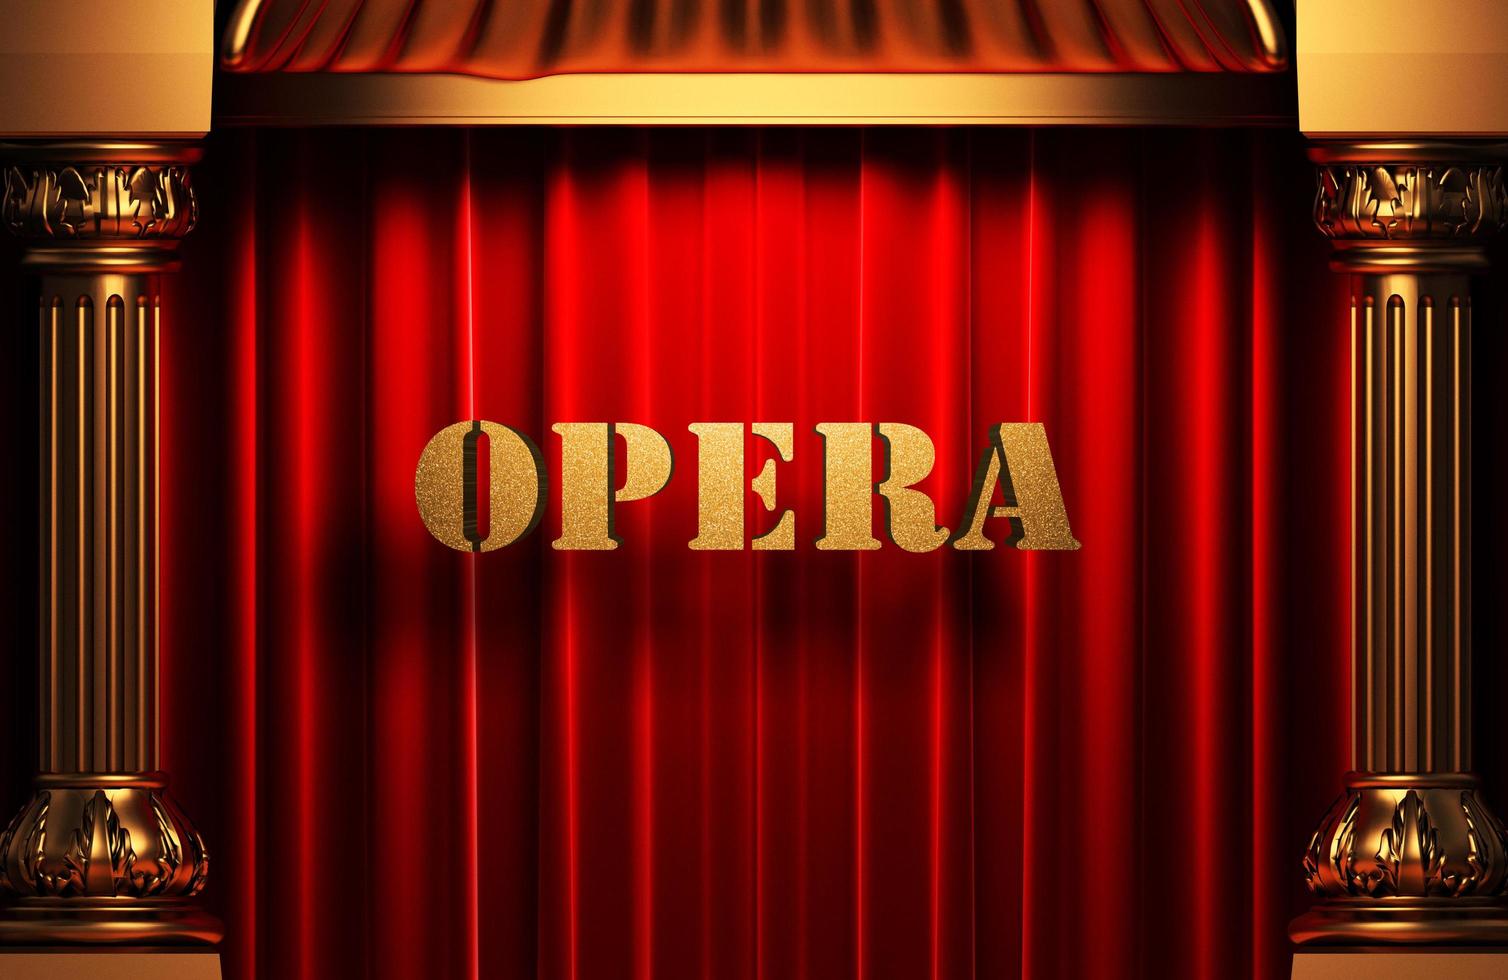 opera gouden woord op rood gordijn foto